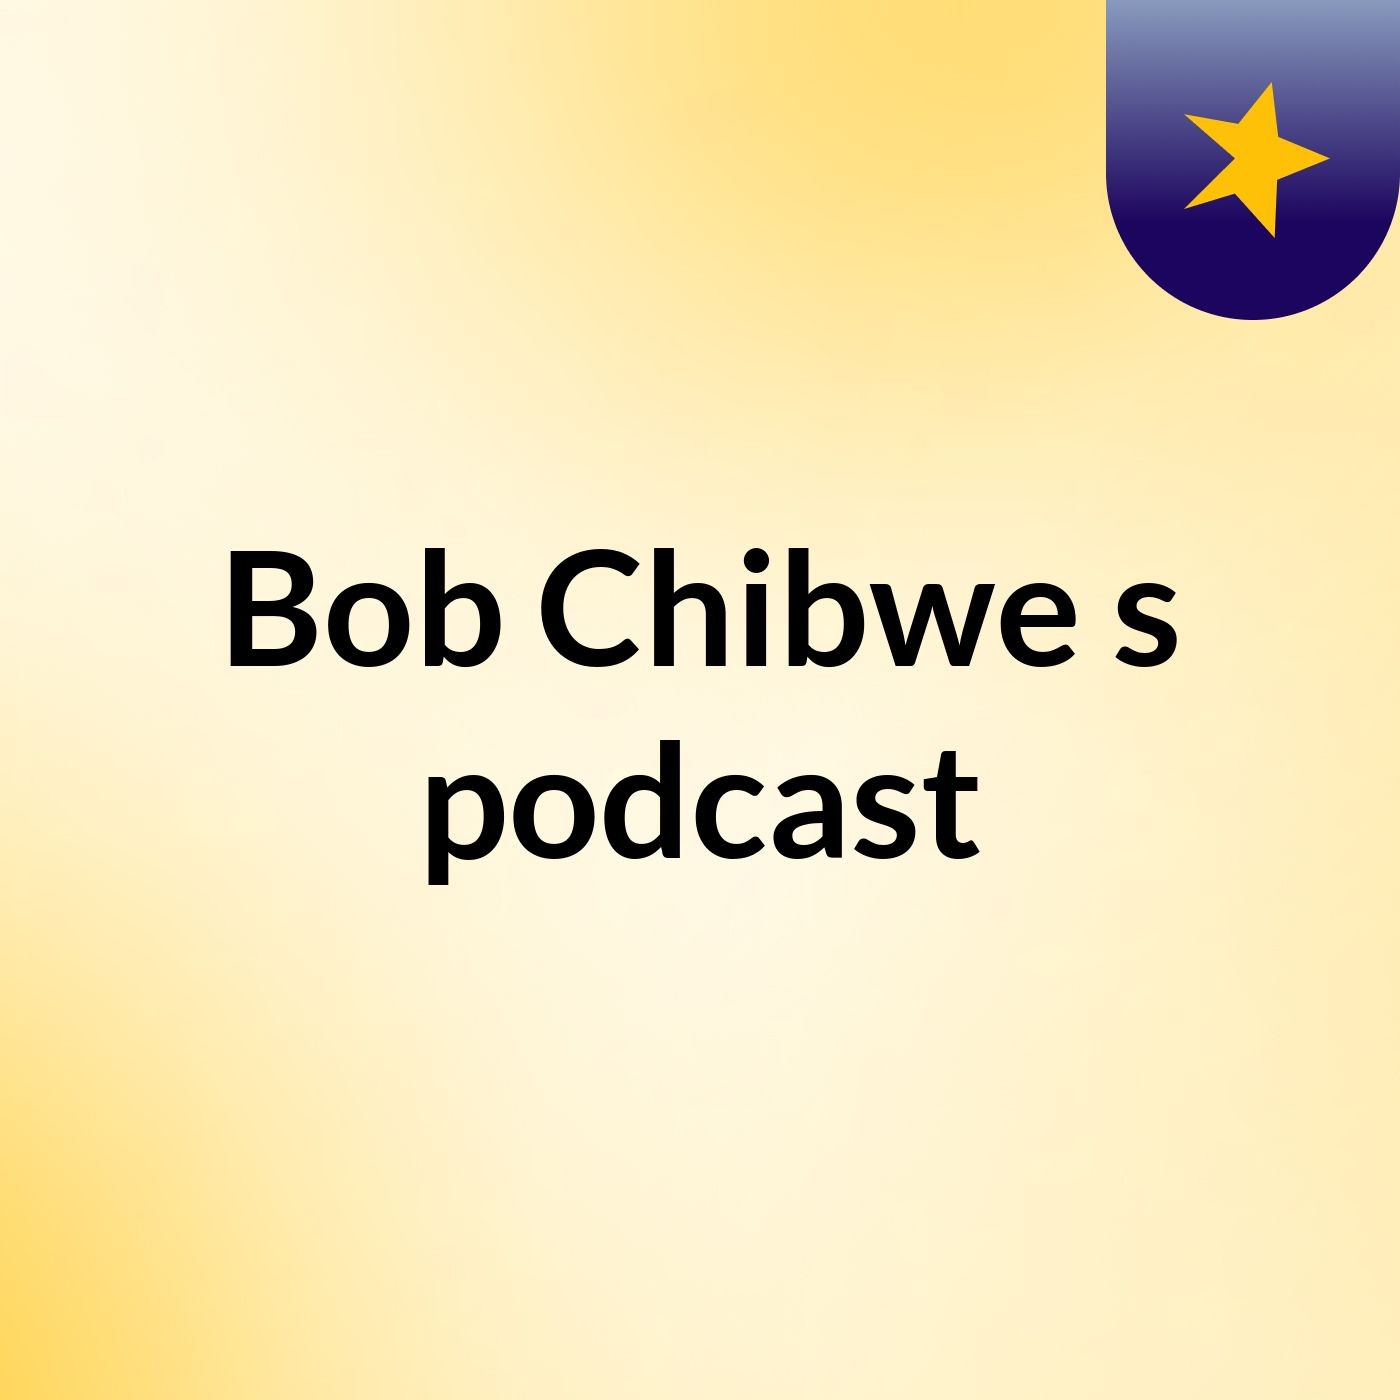 Bob Chibwe's podcast